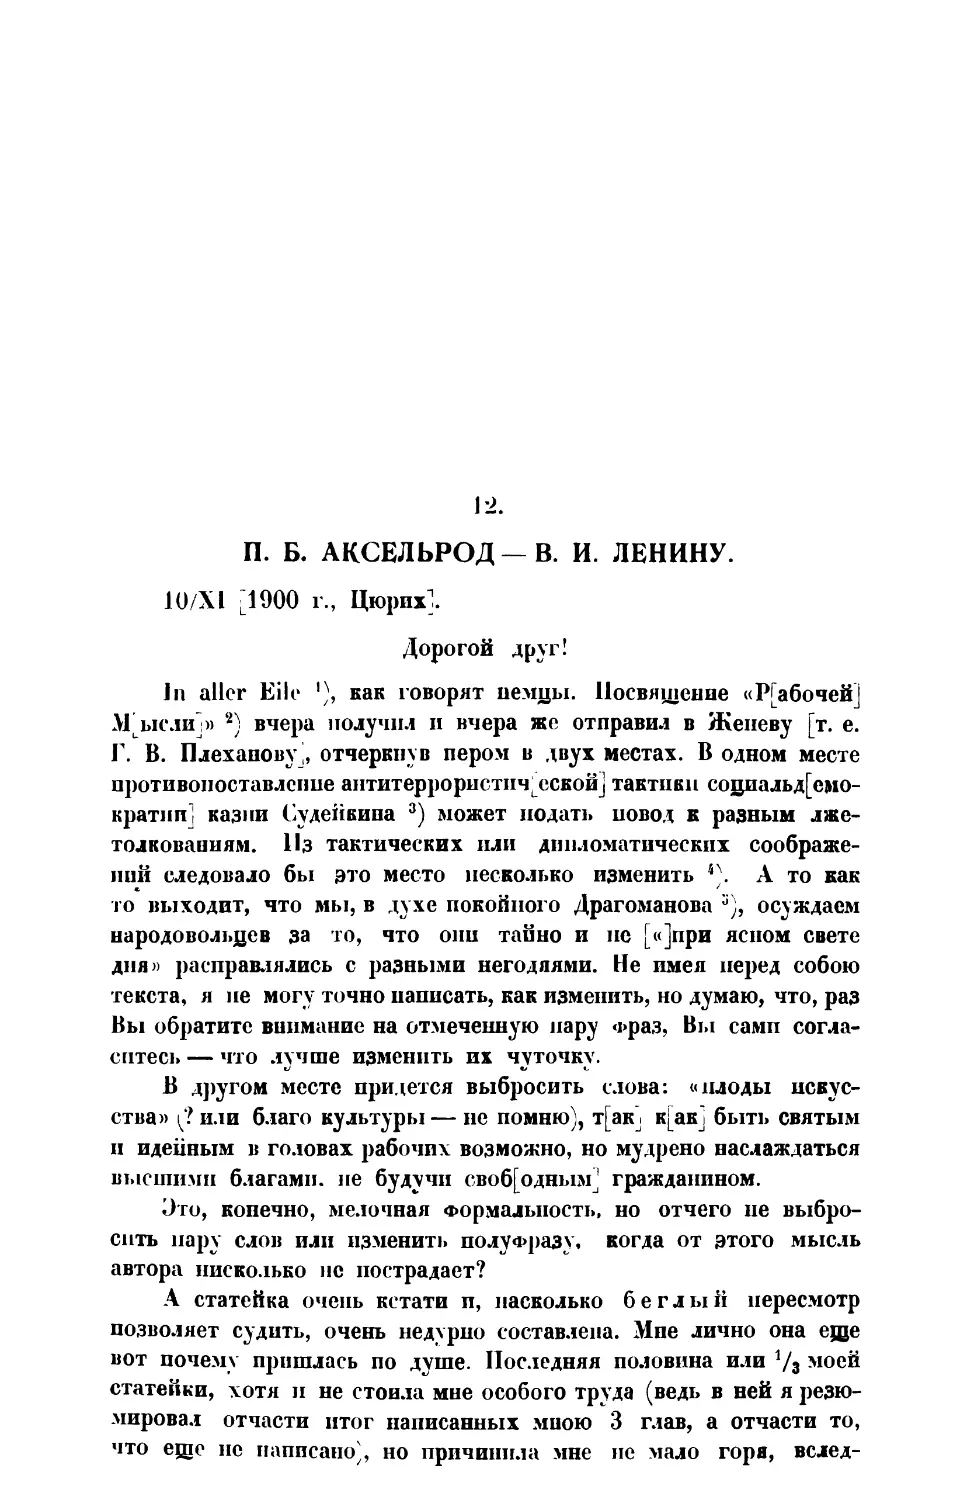 12. П. Б. Аксельрод.— Письмо В. И. Ленину от 10 XI 1900 г.